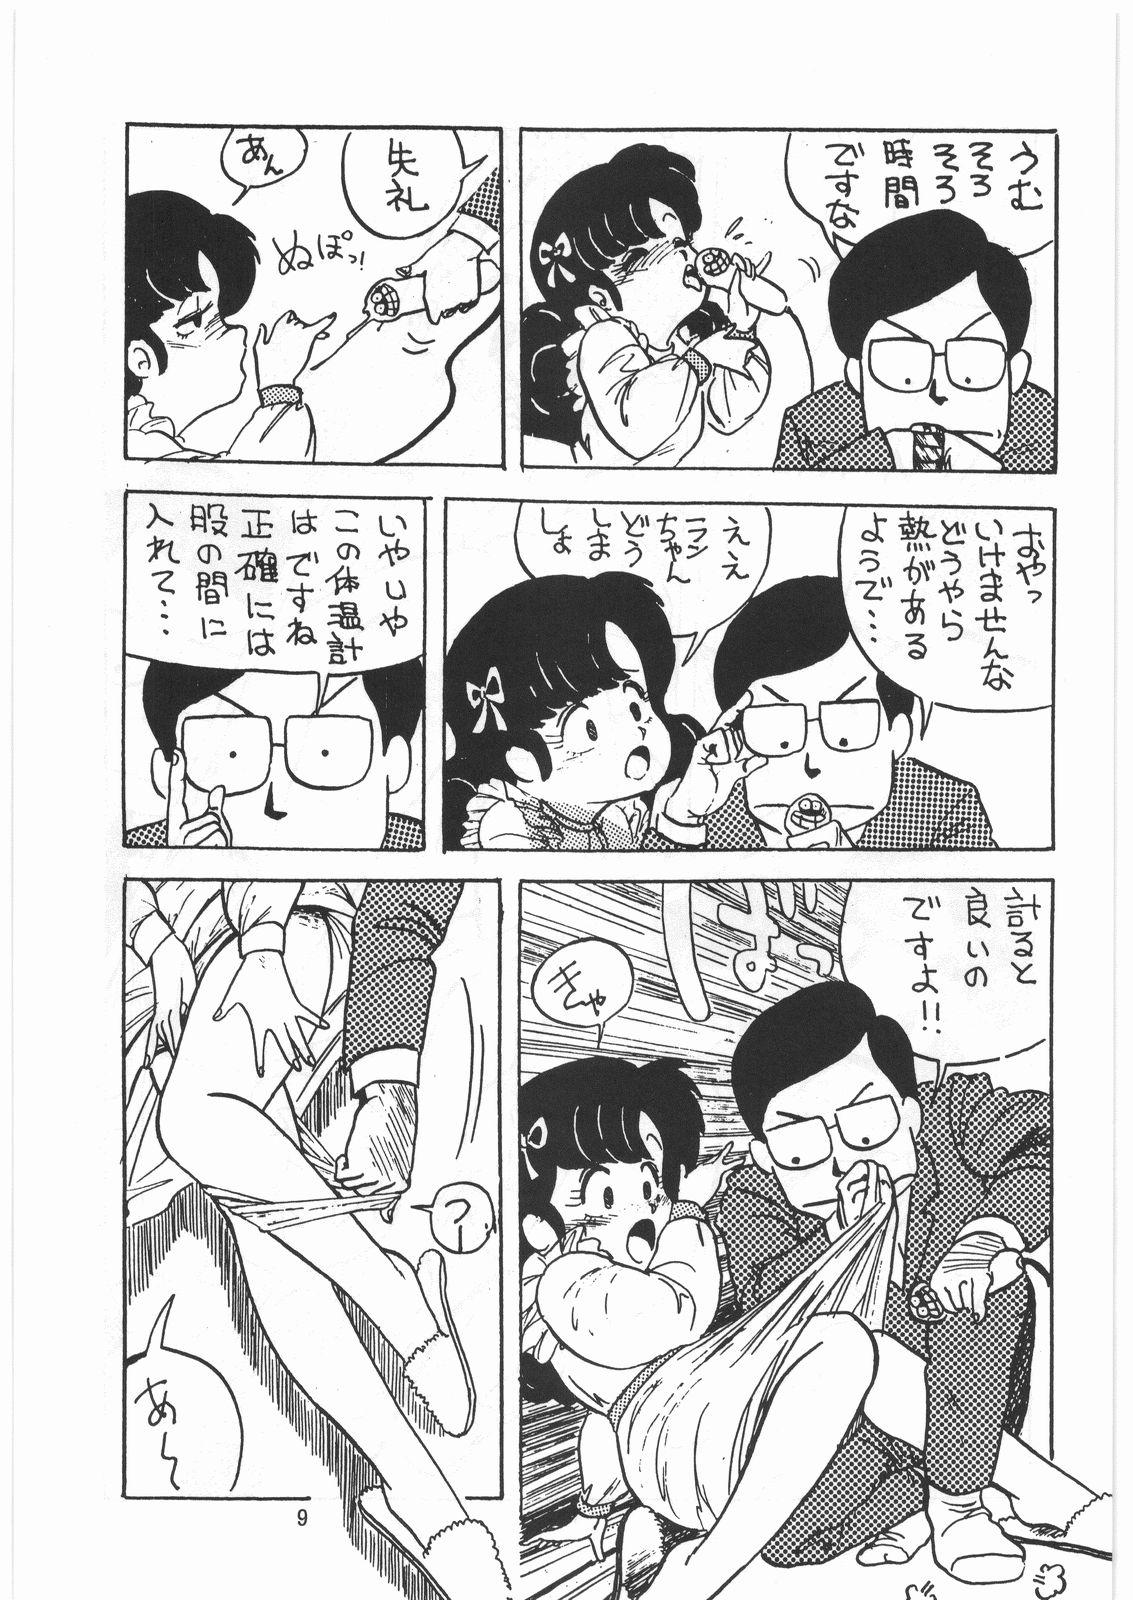 Cam Girl Tororoimo Densetsu - Ten no Maki - Urusei yatsura Maison ikkoku Magical emi Creamy mami Fist of the north star Sasuga no sarutobi Jerk - Page 8